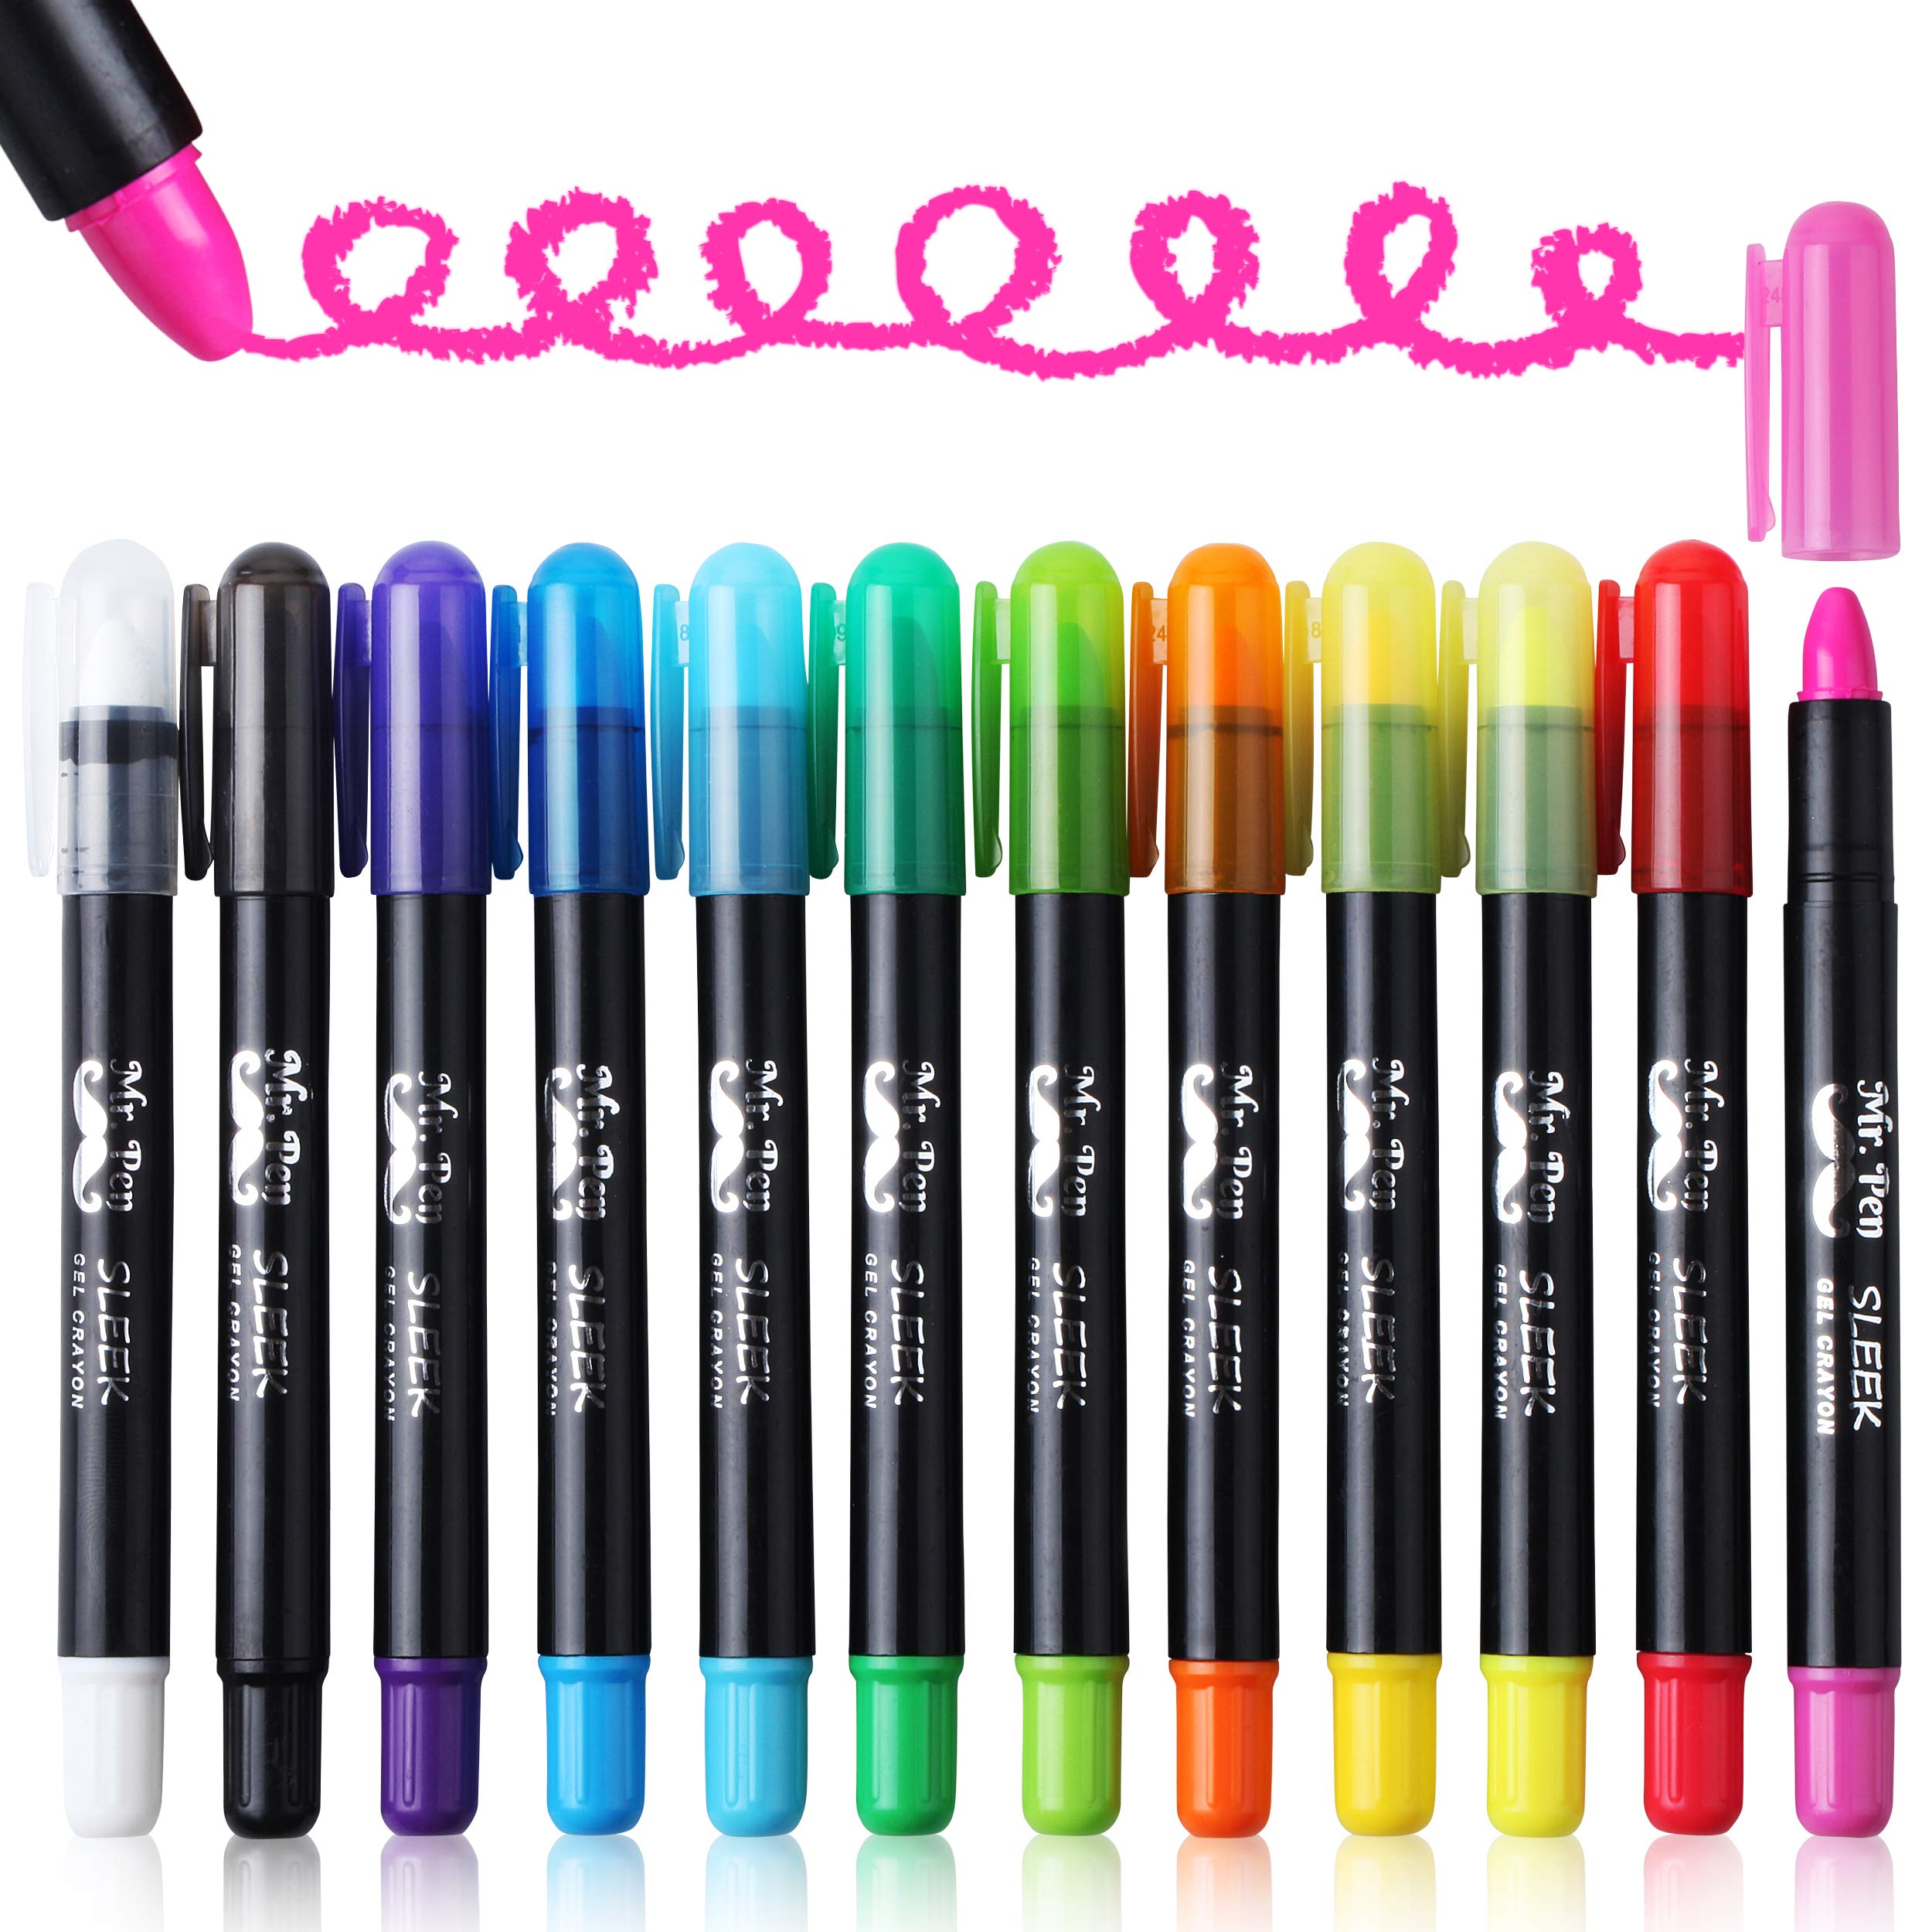  Mr. Pen- Gel Highlighter, 8 Pack, Pastel Colors